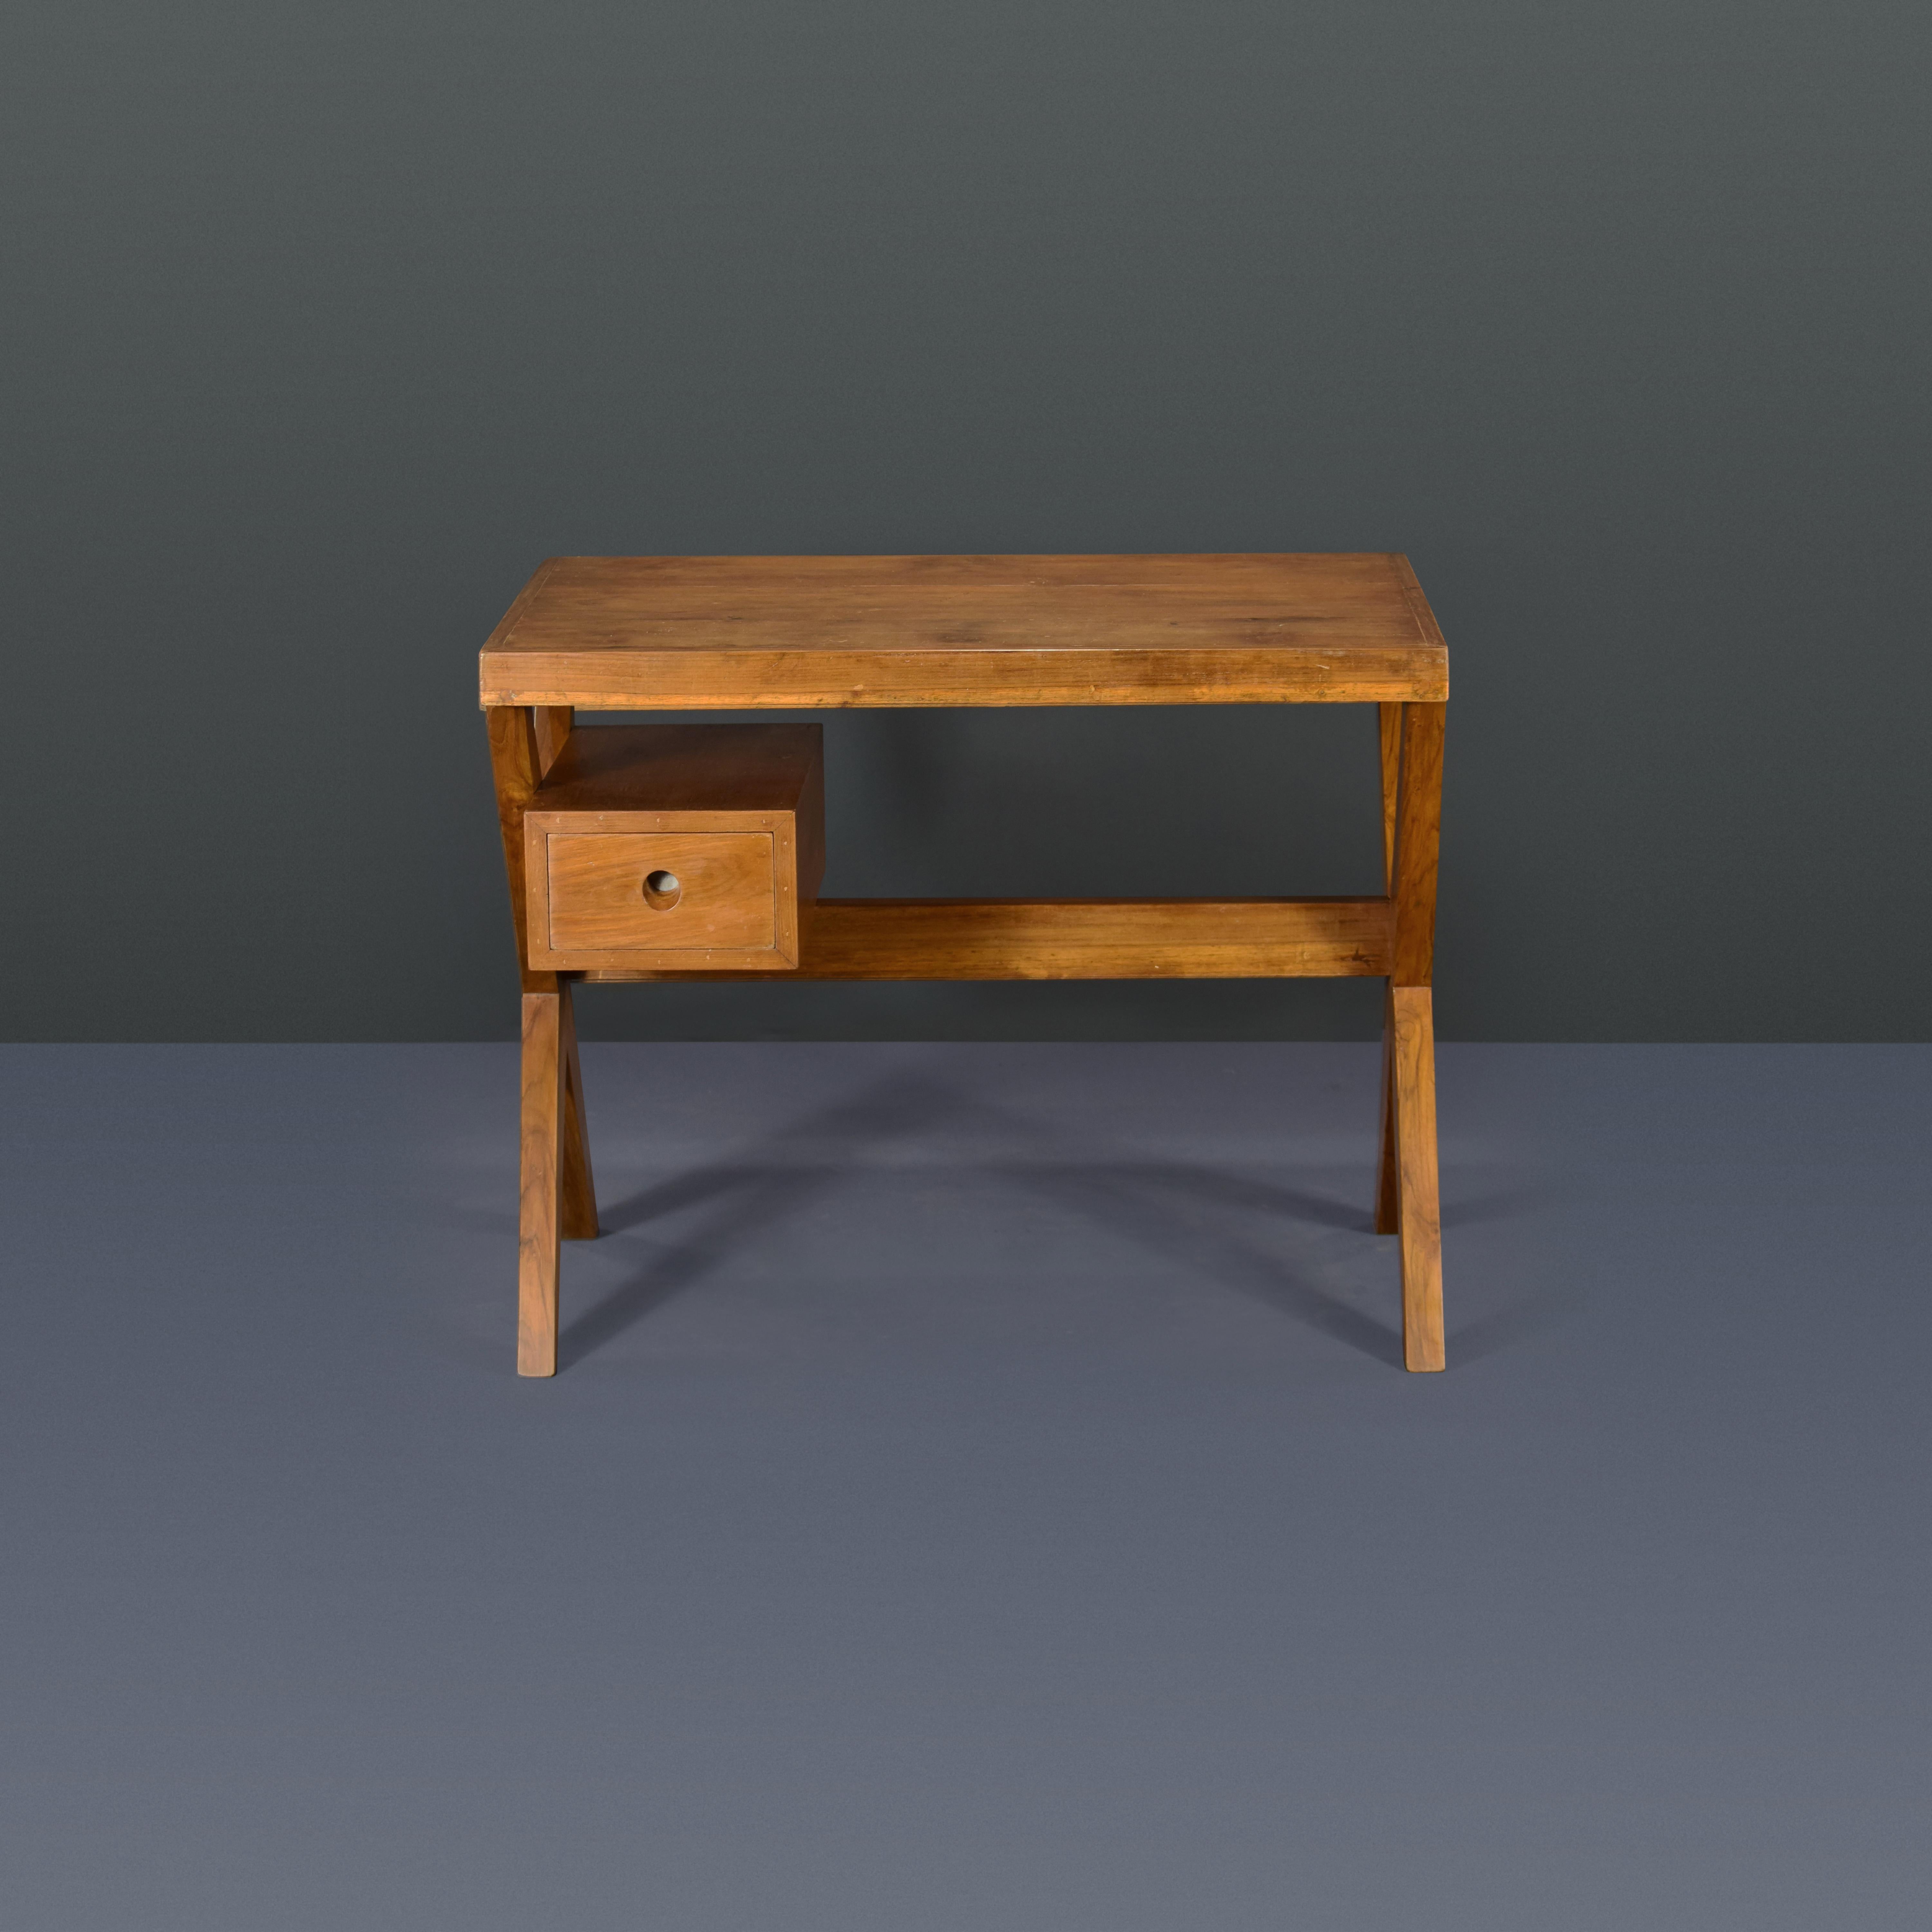 Dieser Schreibtisch ist in seiner Schlichtheit roh und verkörpert die reinen Ideen von Pierre Jeanneret. Es ist ein sehr stabiles Stück, das mir sehr gut gefällt. Es beschränkt sich auf die Elemente, die es braucht: Schubladen, Platte und ein X-Fuß,